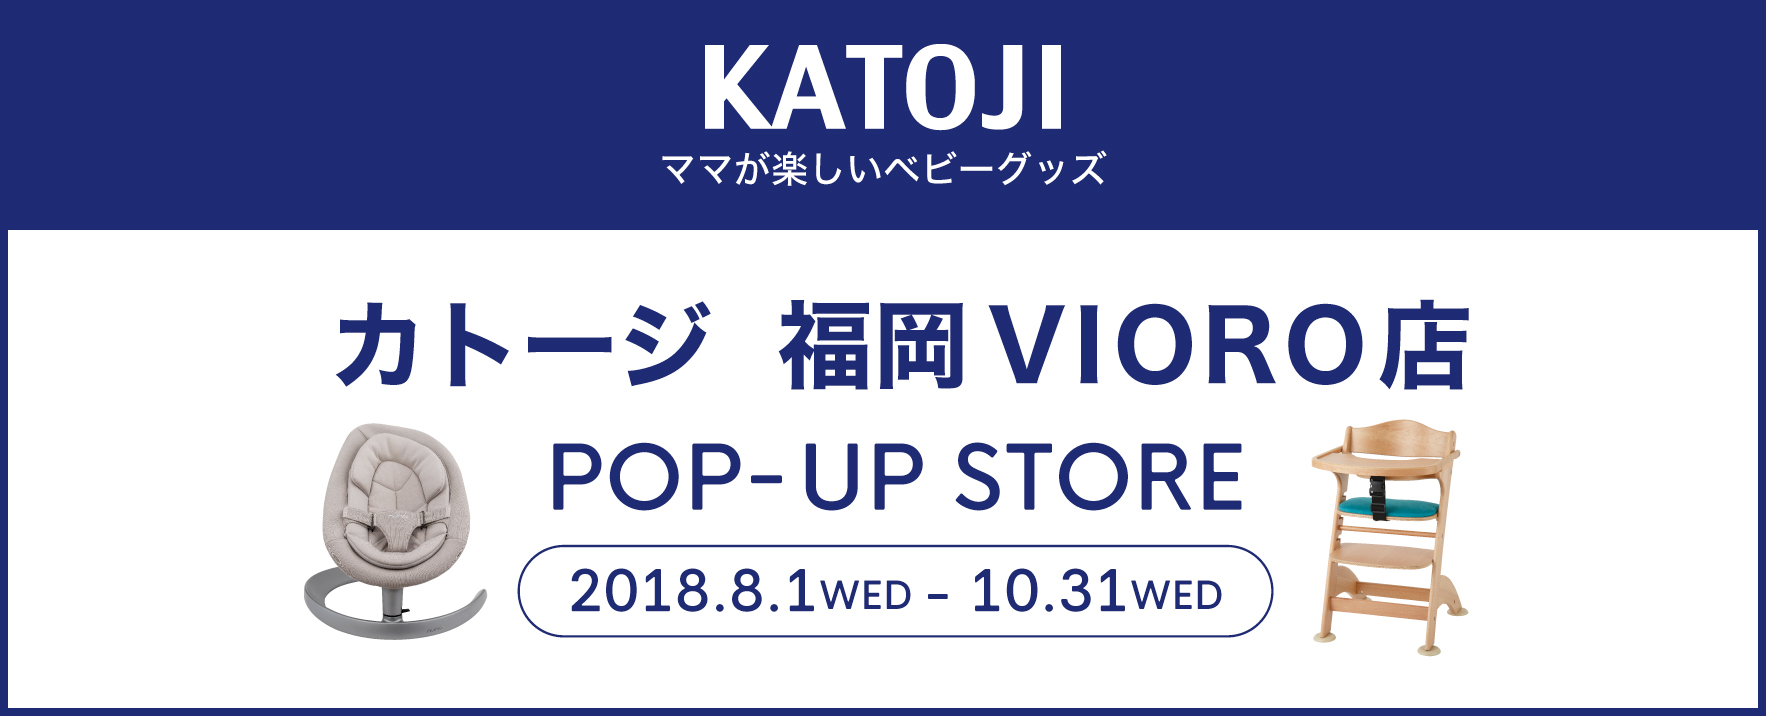 カトージが福岡 天神の商業施設 Vioro に18年8月1日 水曜日 より期間限定のショップをオープン 株式会社カトージのプレスリリース